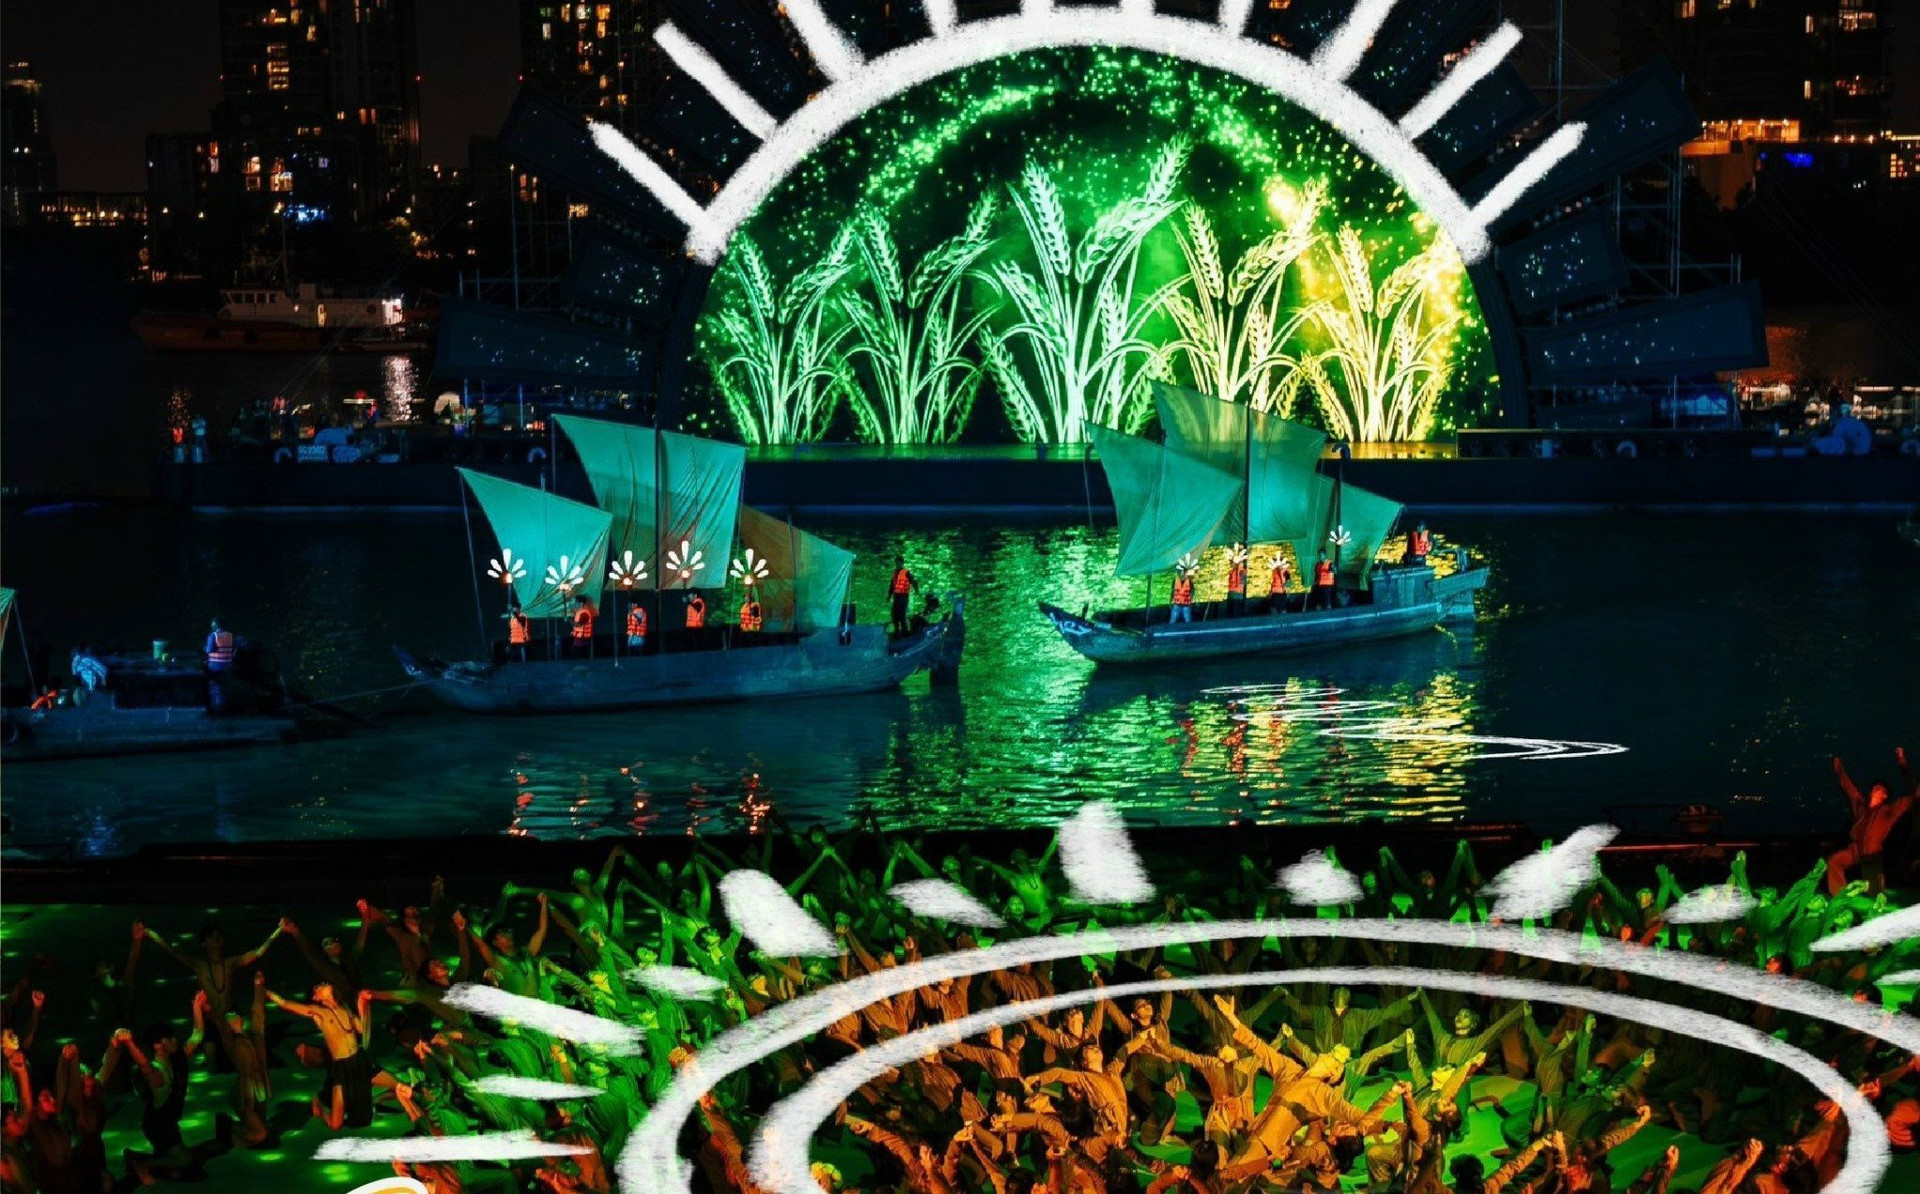 Chương trình nghệ thuật “Dòng sông kể chuyện” nằm trong khuôn khổ Lễ hội sông nước TPHCM lần thứ nhất năm 2023. (Ảnh: Sở Du lịch TP HCM).